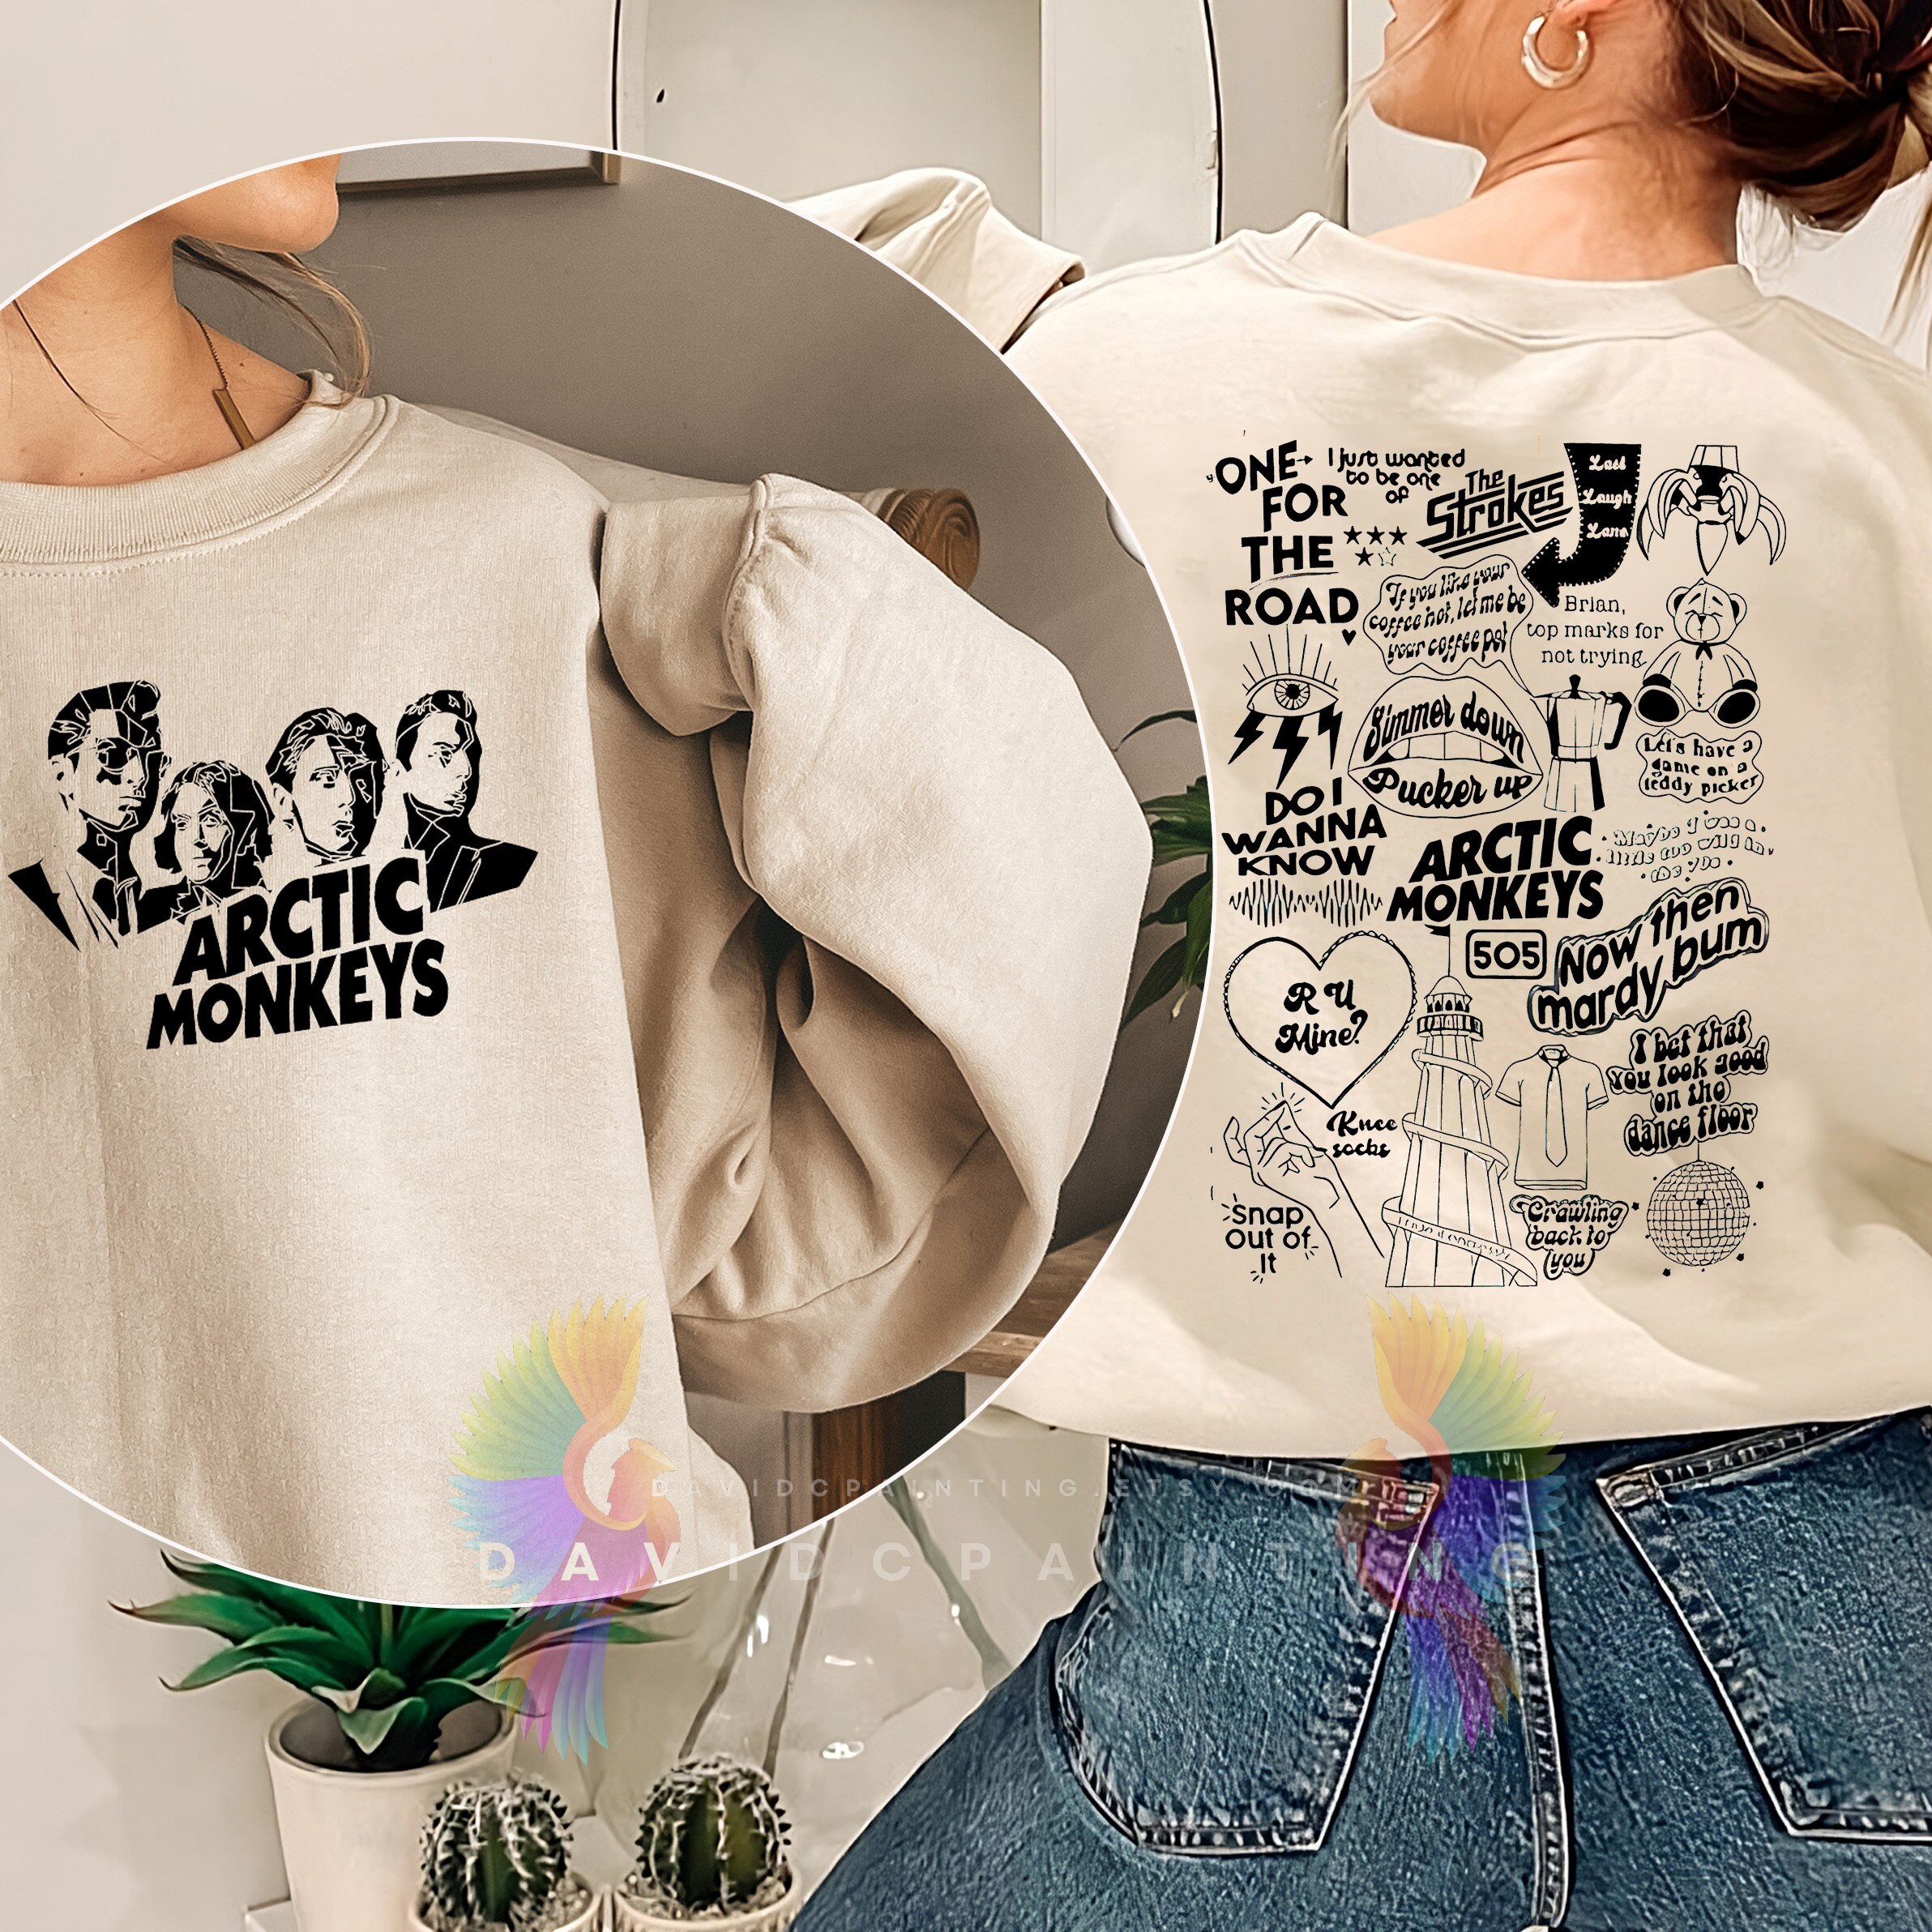 Arctic Monkey Vintage Arctic Monkeys Shirt  Arctic Monkeys Shirt